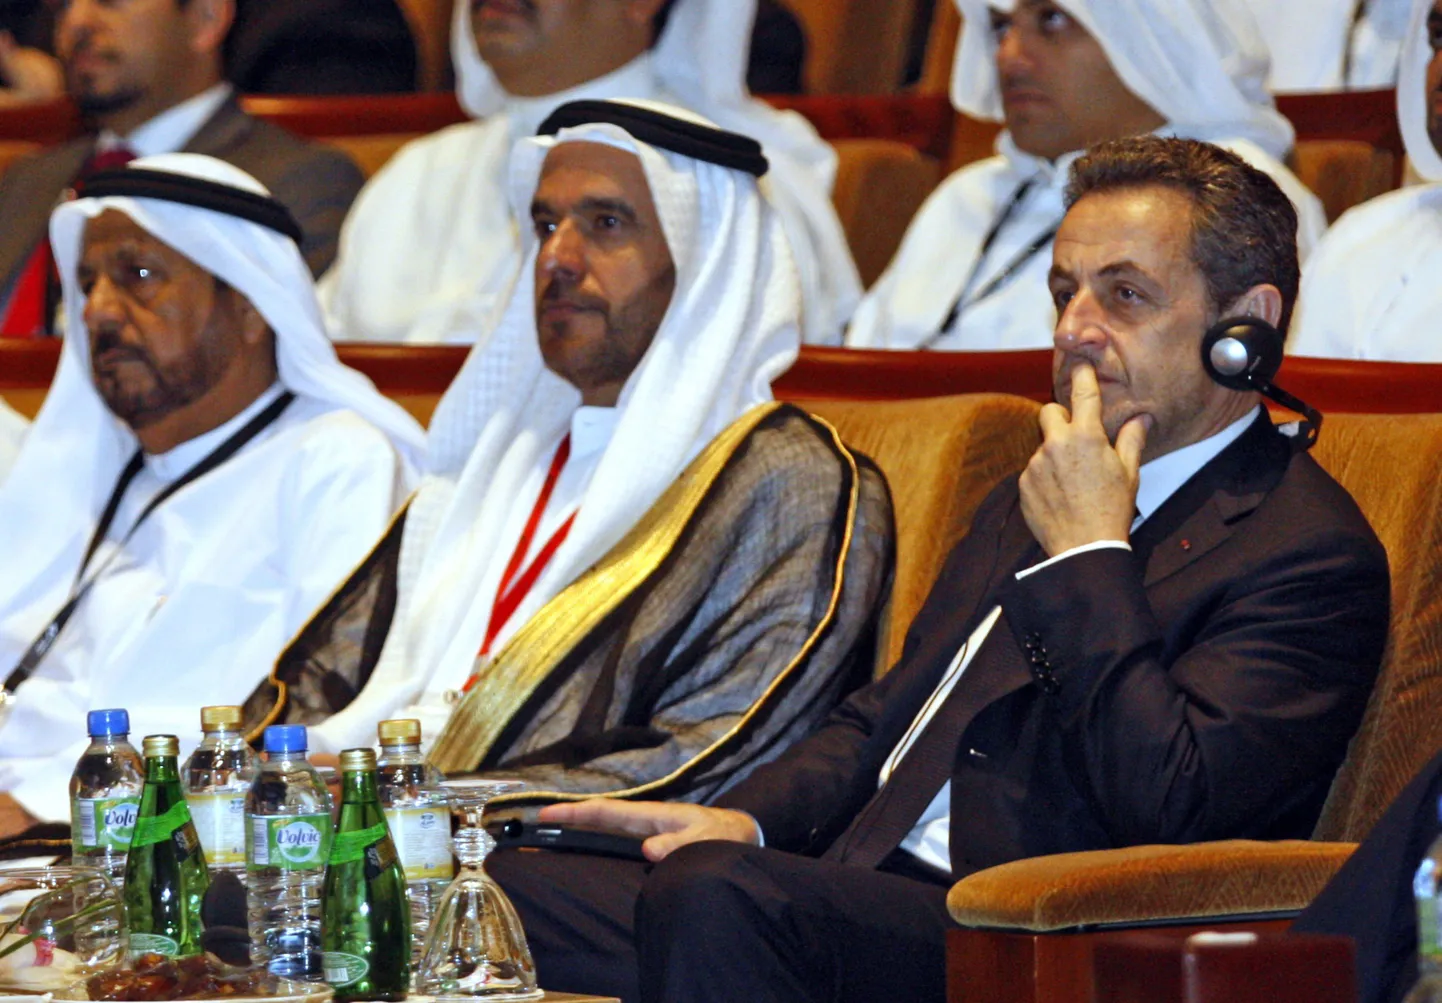 Prantsuse endine riigipea Nicolas Sarkozy (paremal) majandusfoorumil Abu Dhabis 27. veebruaril 2013.